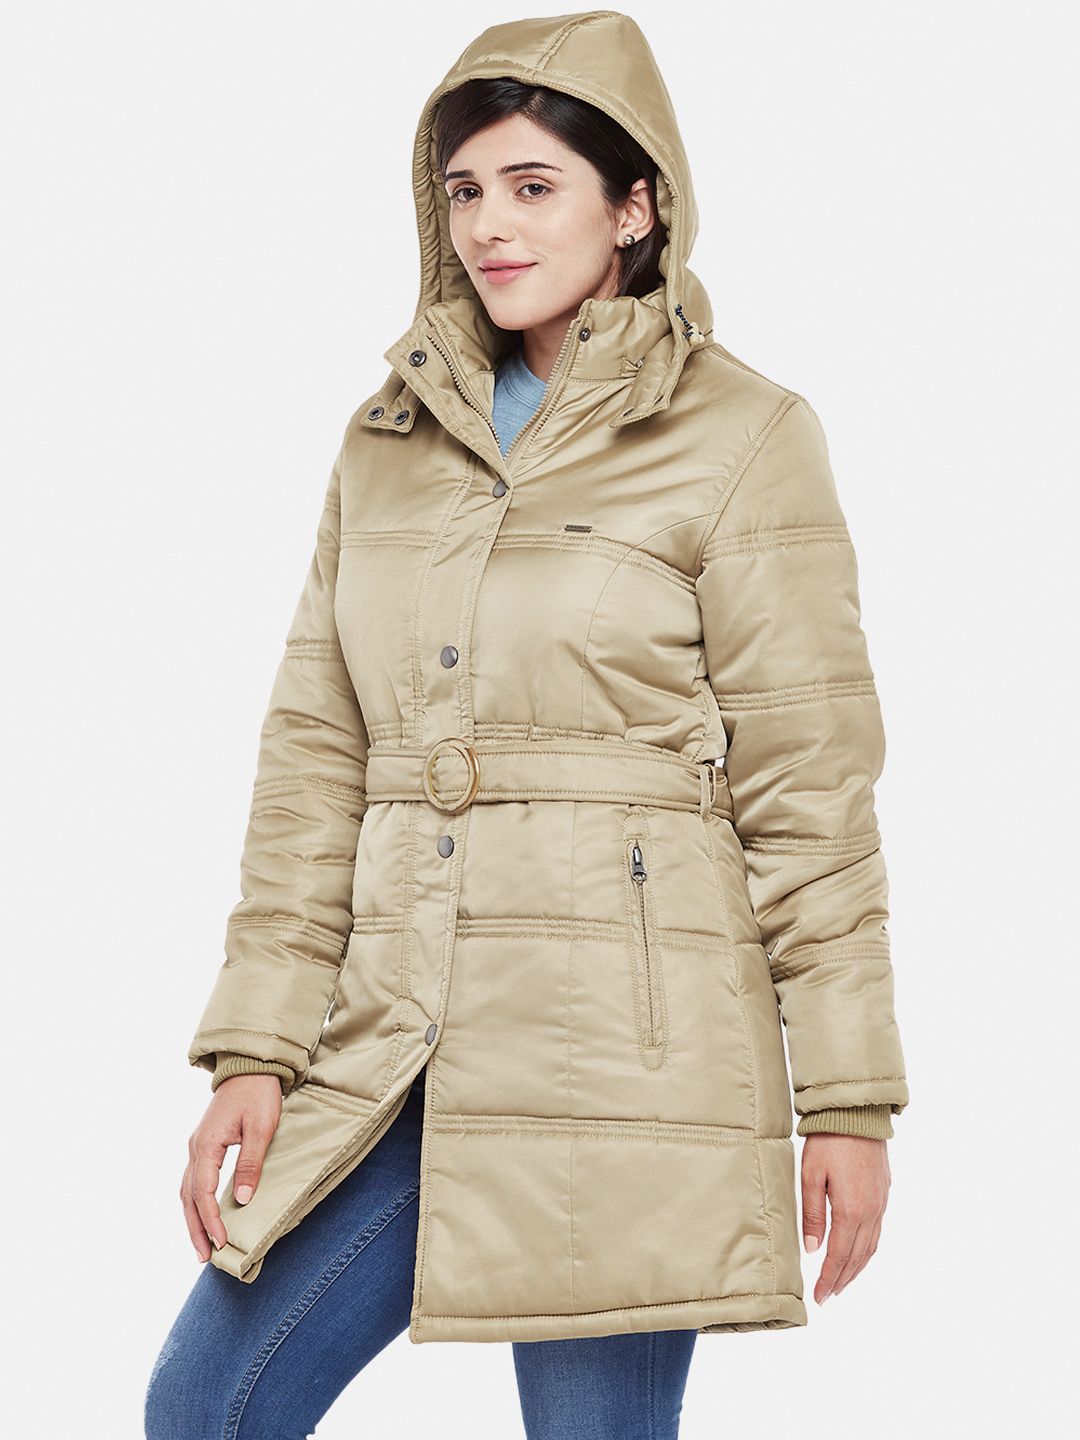 Beige Fleece Lined Hooded Parka Jacket | Women